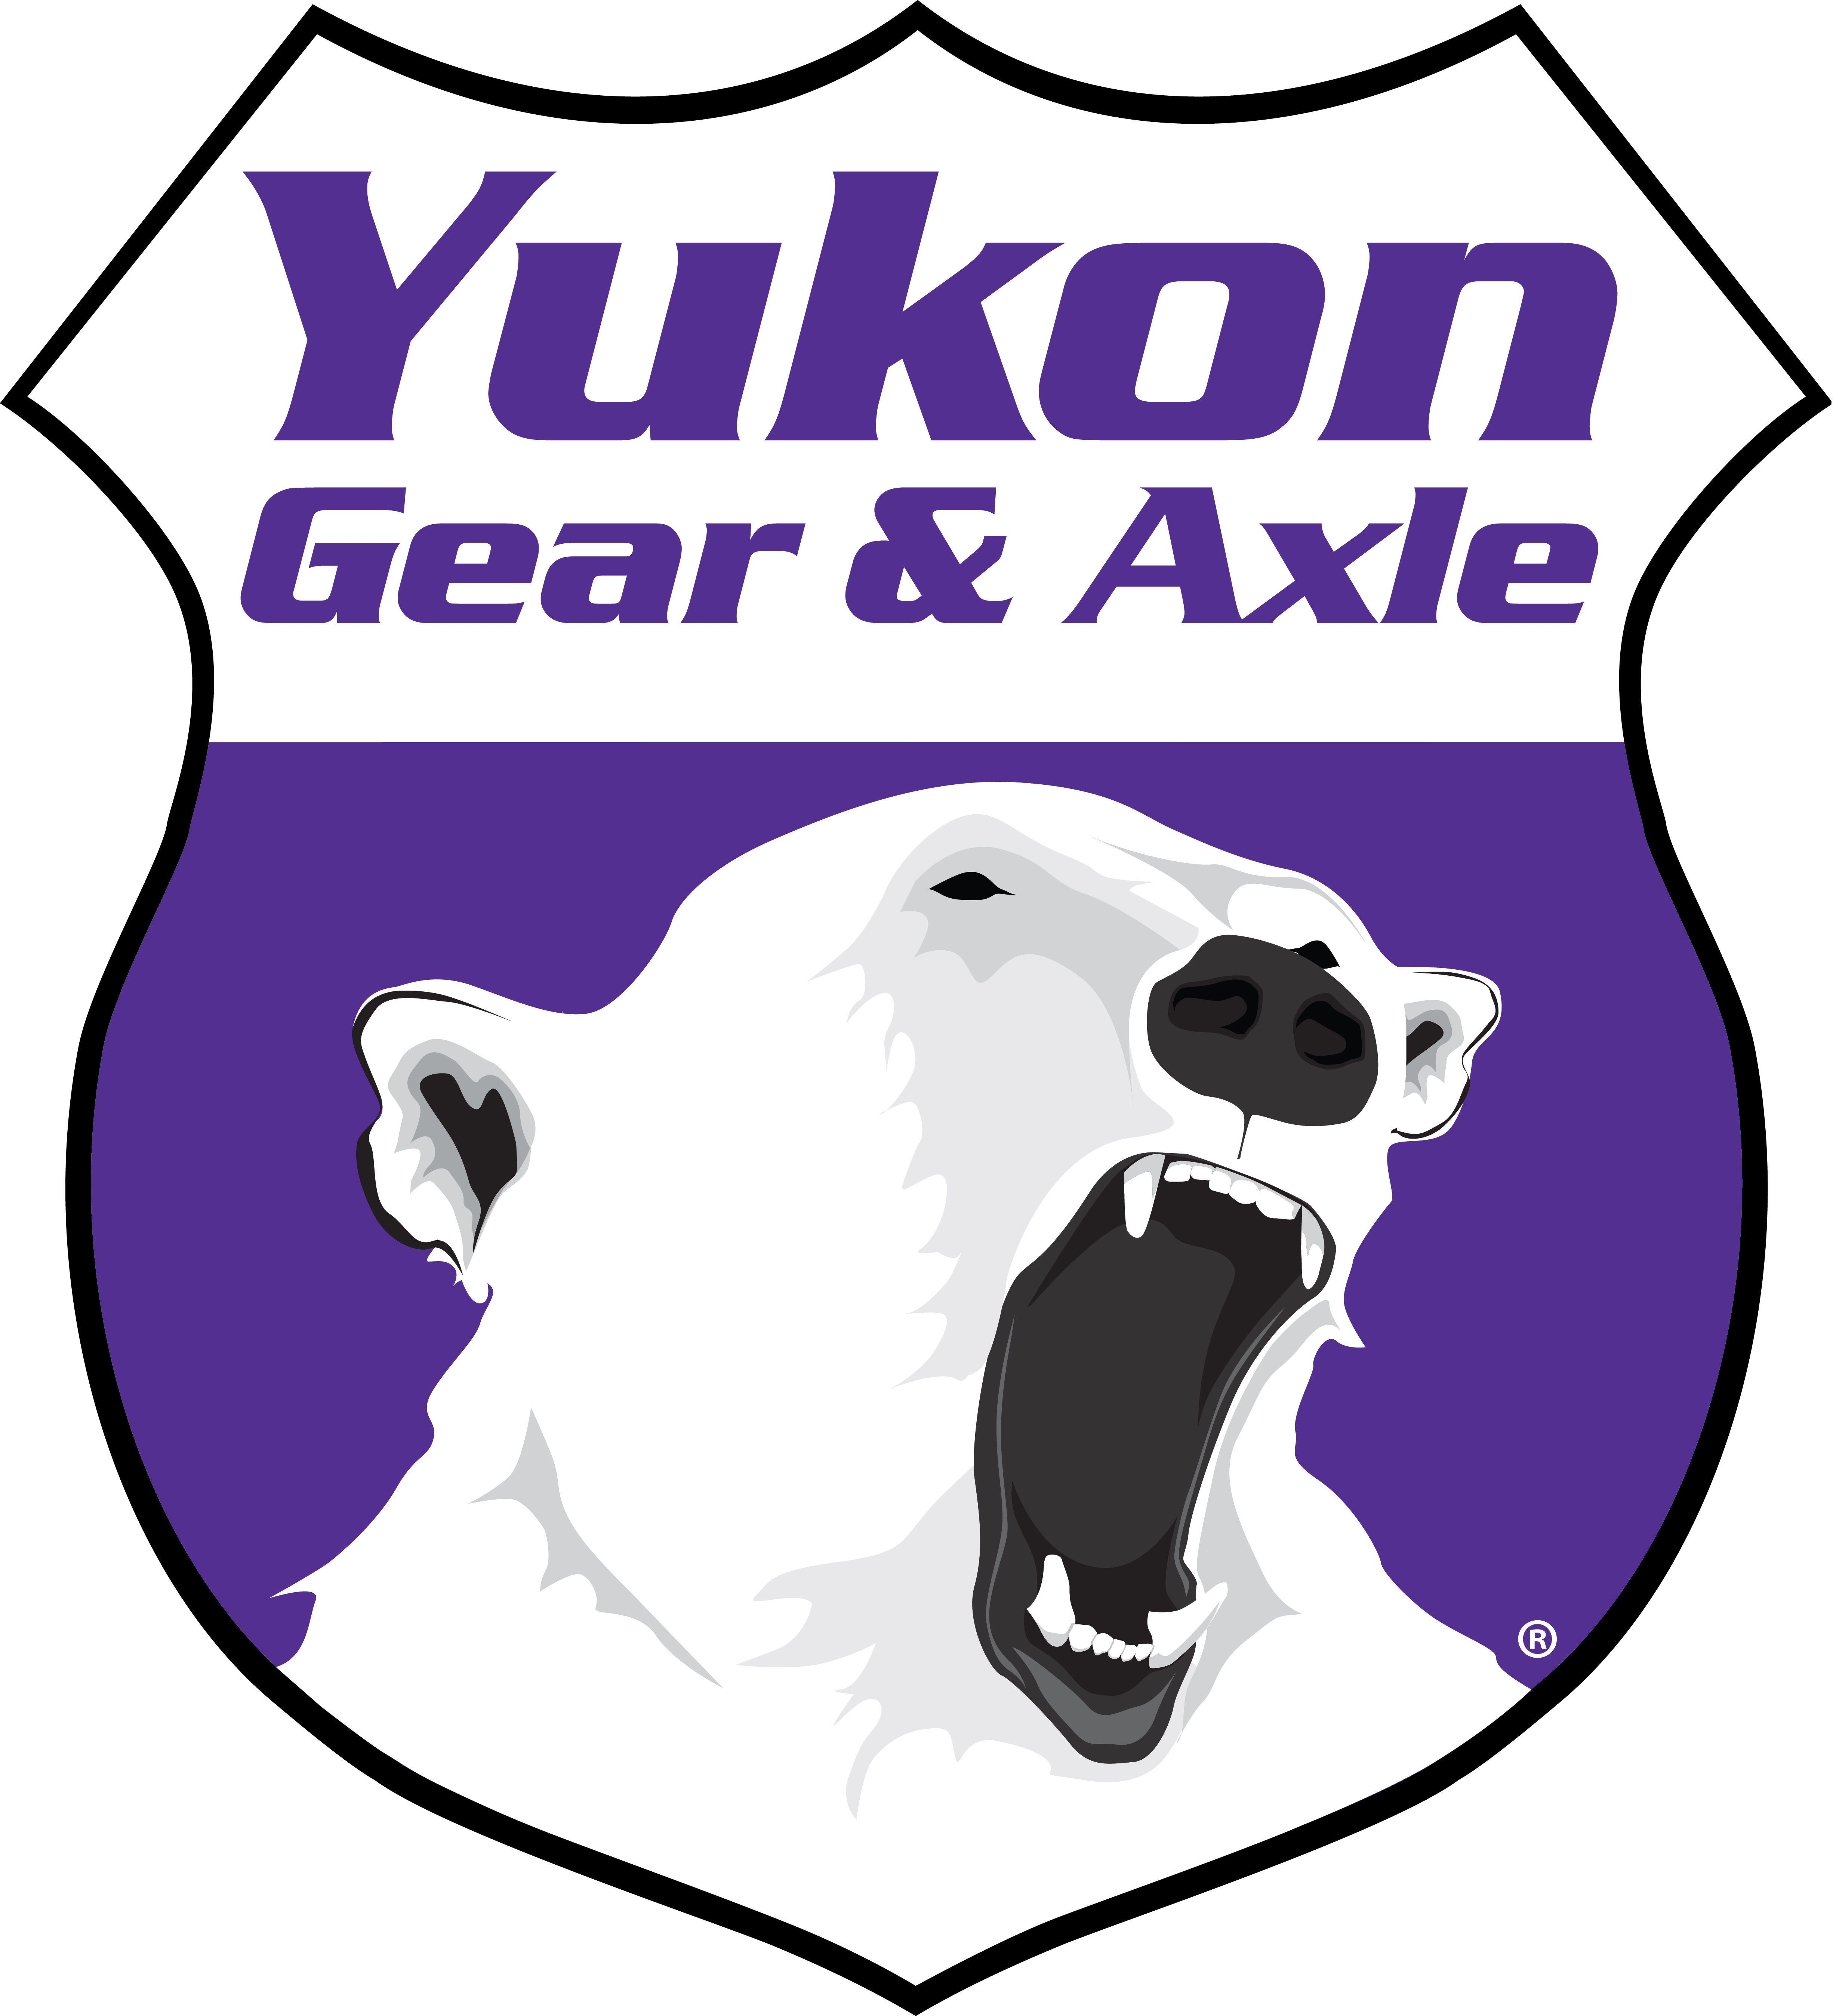 Yukon standard open spider gear kit, Model 35, 27 spline axles, hubs 1.625" OD 